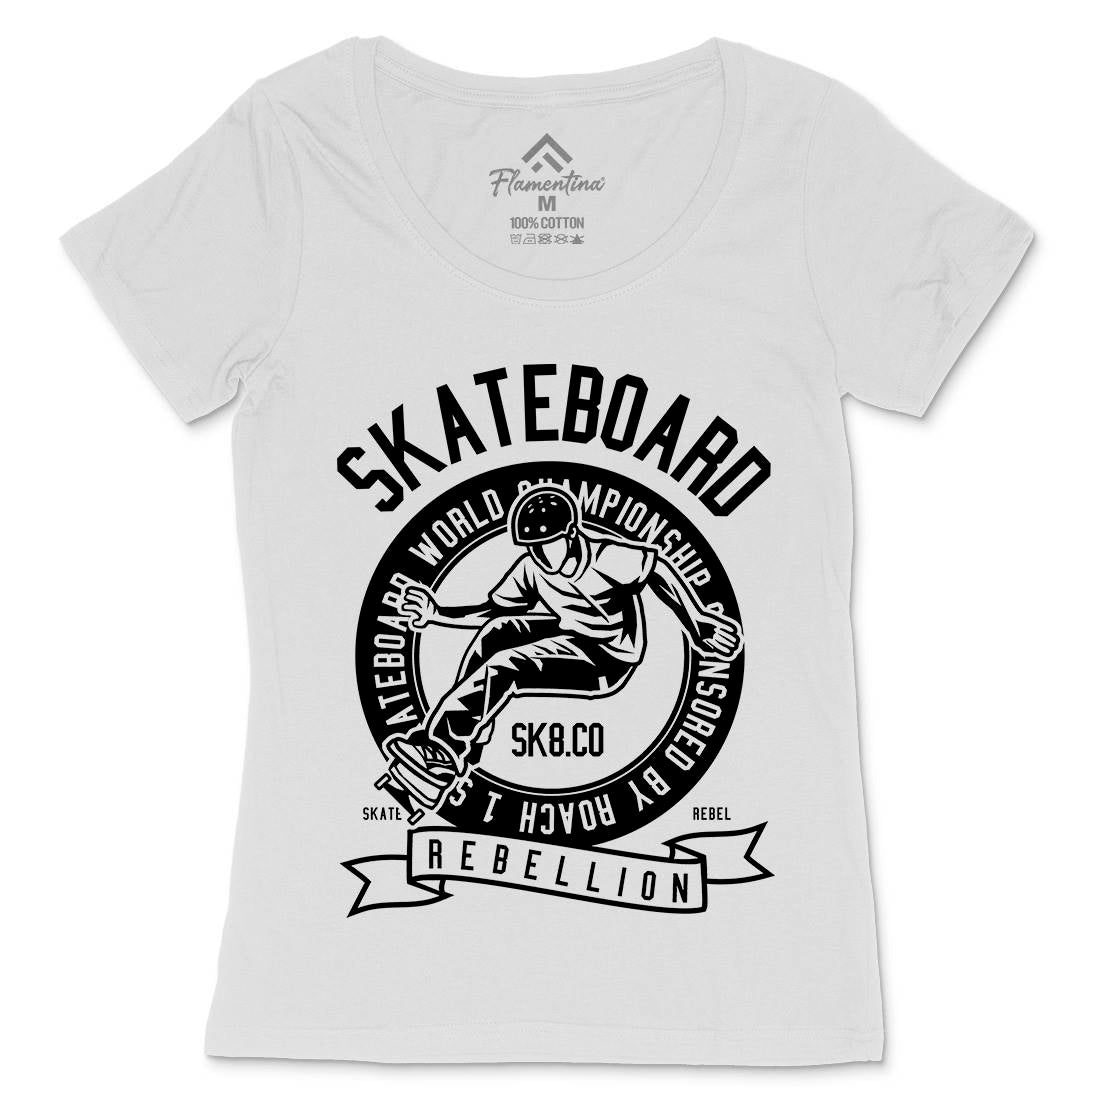 Skateboard Rebellion Womens Scoop Neck T-Shirt Skate B624